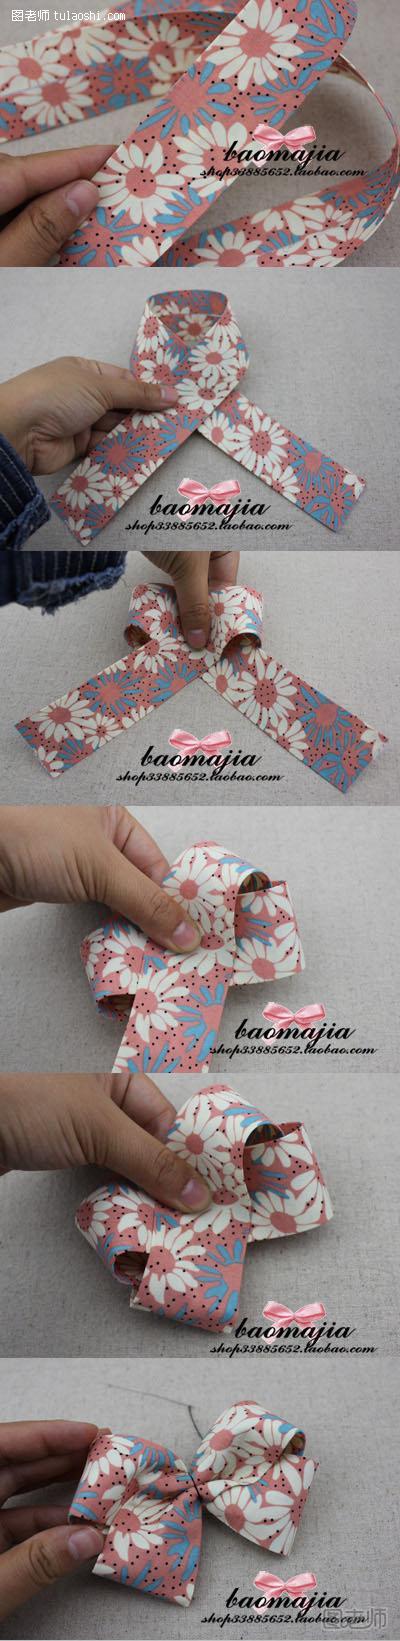 布带简单捆绑变成漂亮的蝴蝶结手工制作